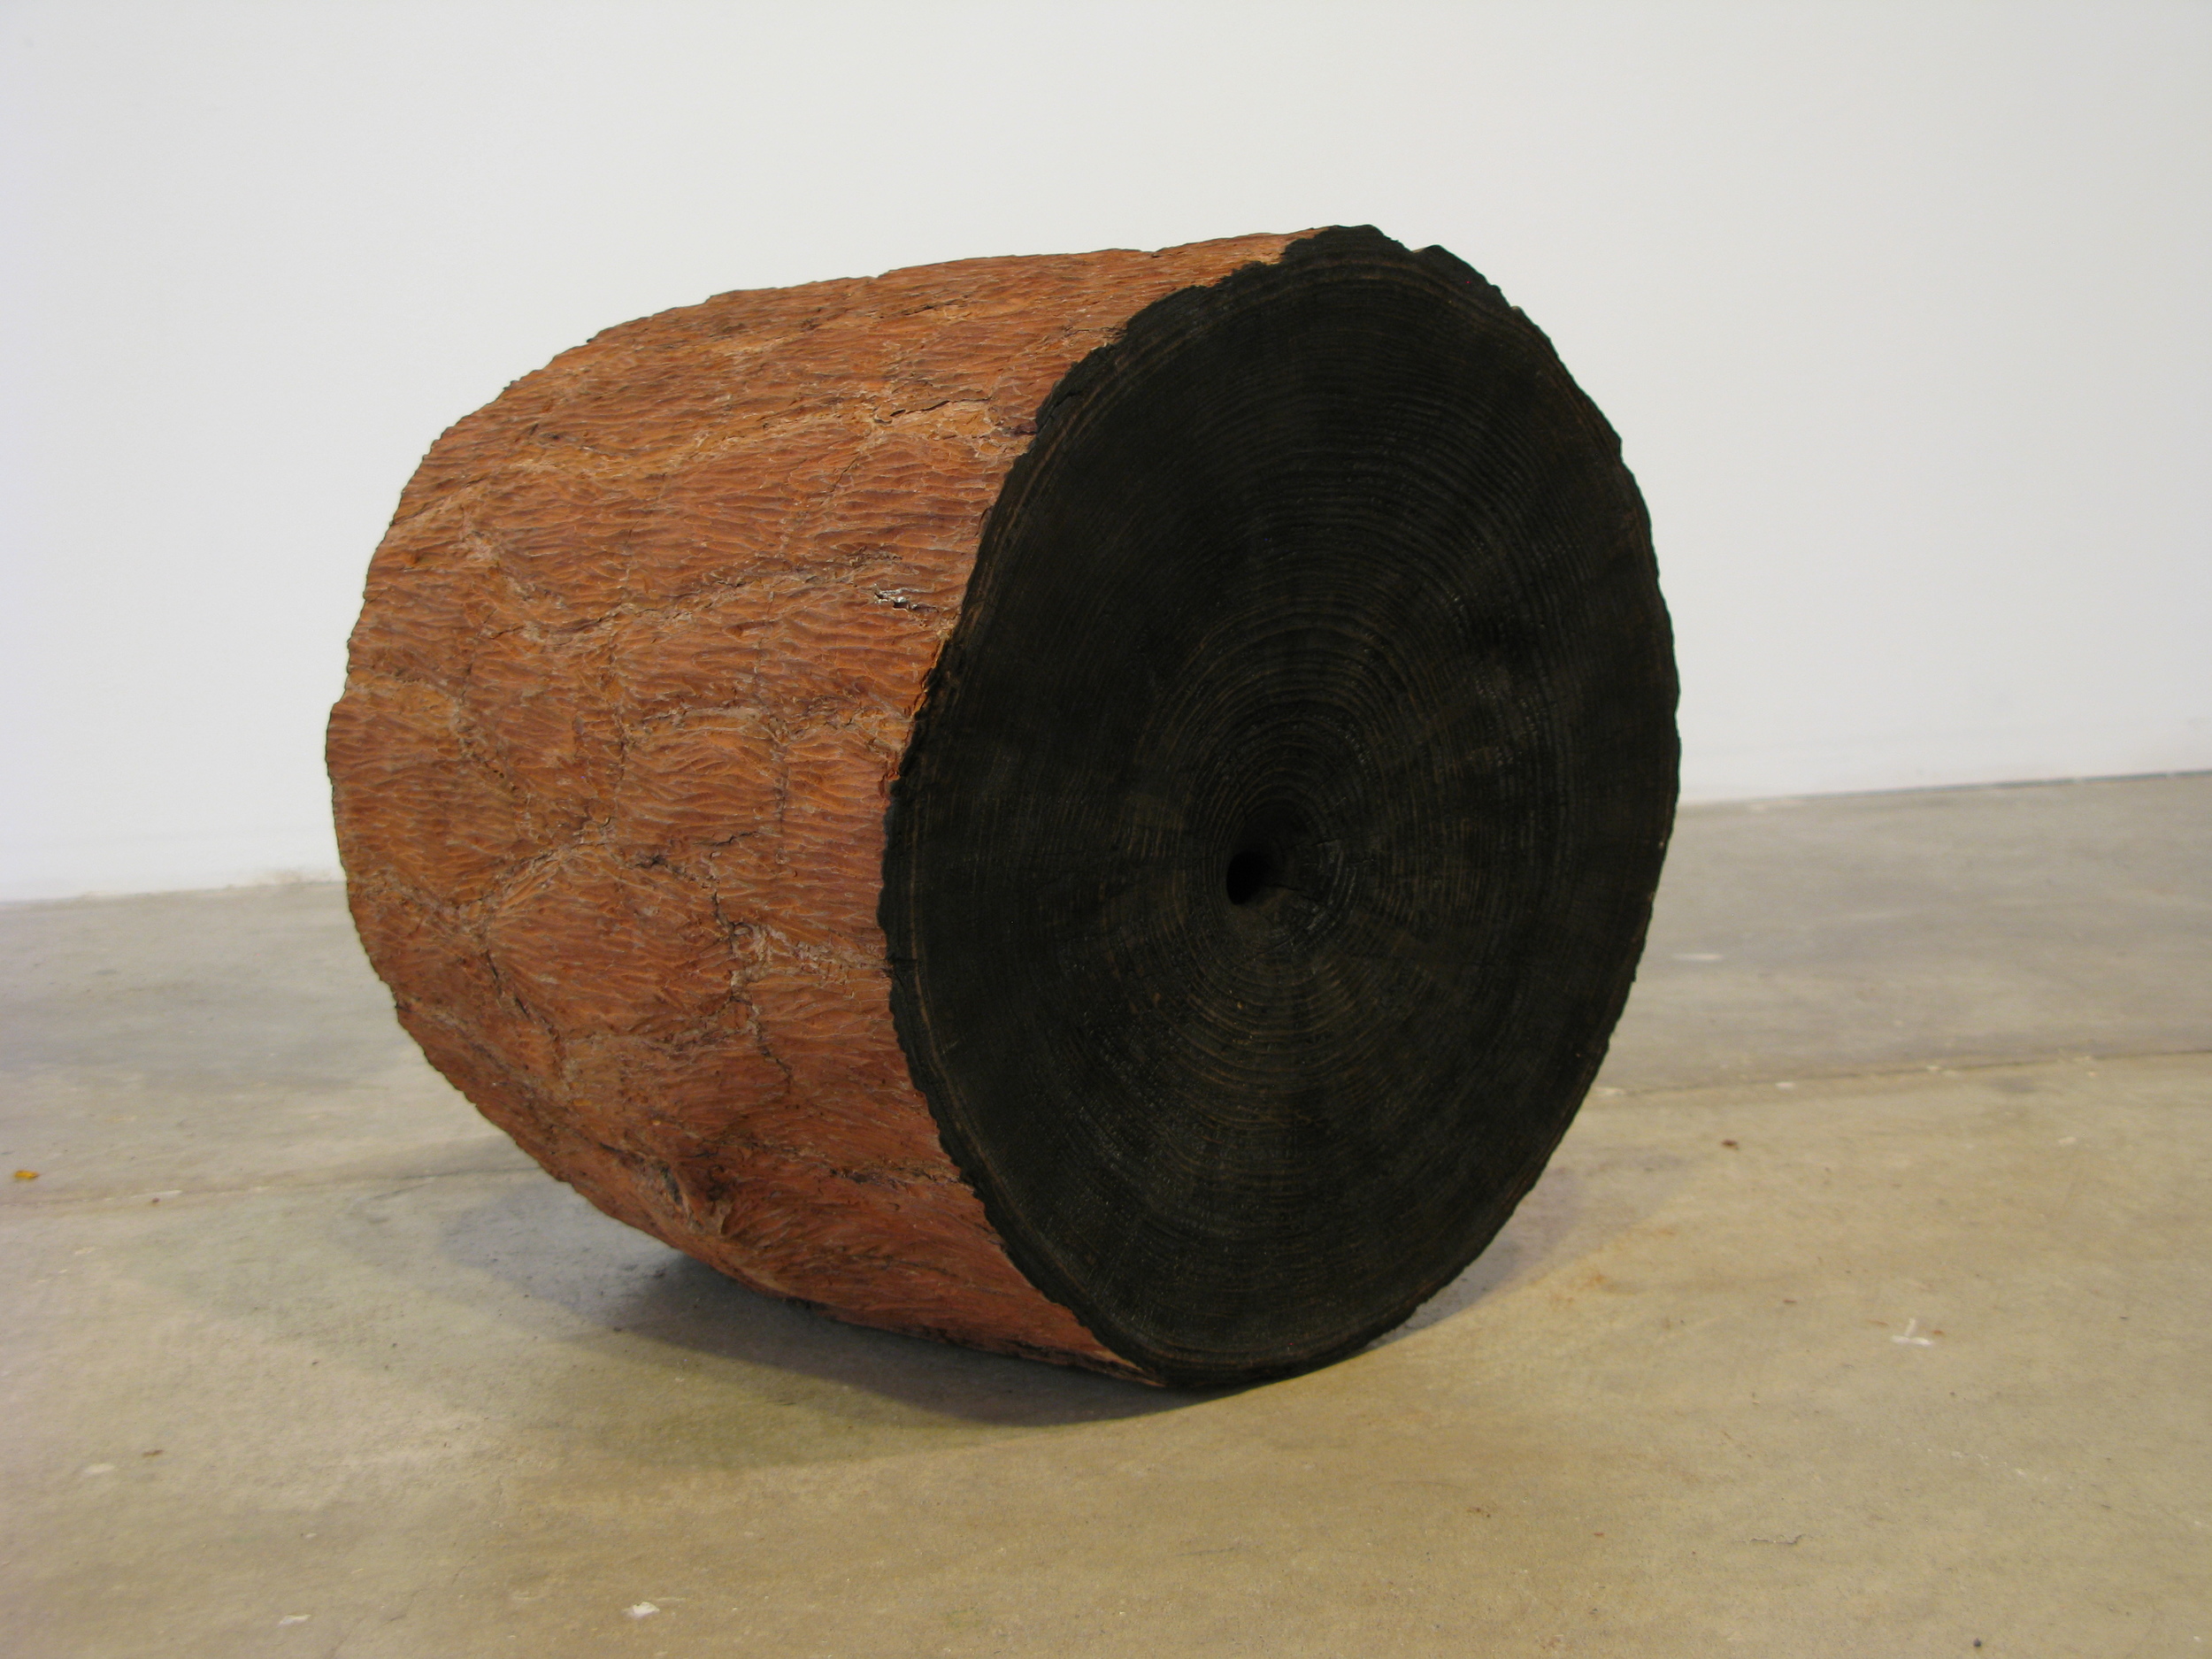  Carbon  Loblolly pine, 2015 